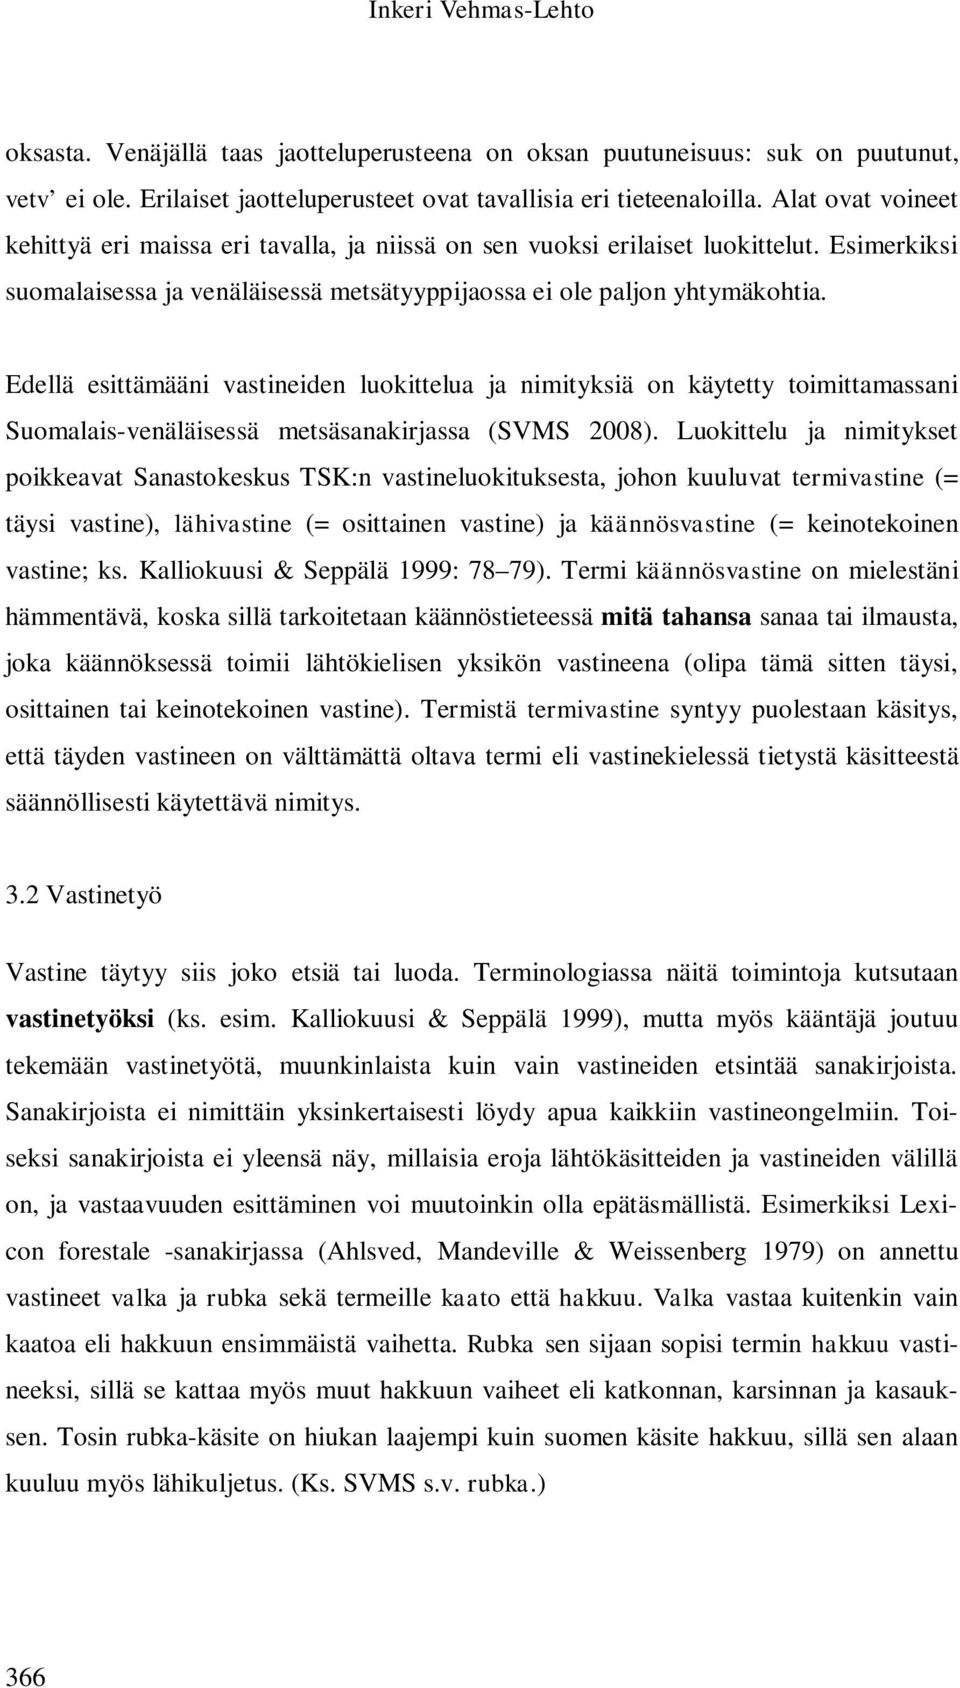 Edellä esittämääni vastineiden luokittelua ja nimityksiä on käytetty toimittamassani Suomalais-venäläisessä metsäsanakirjassa (SVMS 2008).